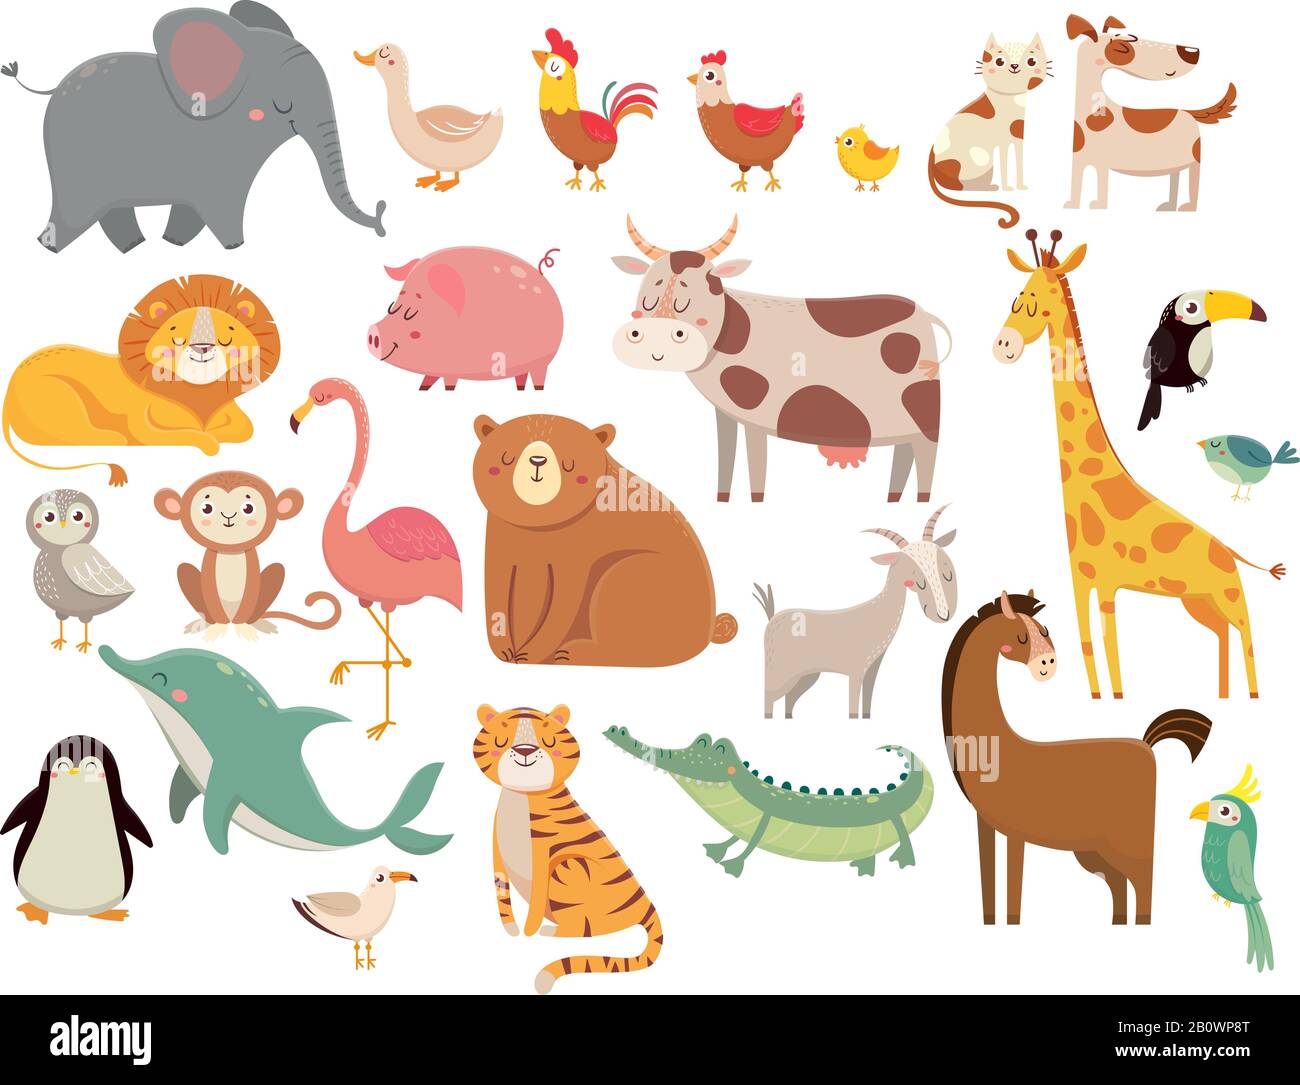 Animaux de dessin animé. Joli éléphant et lion, girafe et crocodile, vache et poulet, chien et chat. Jeu de vecteurs animaux de ferme et de savane Illustration de Vecteur